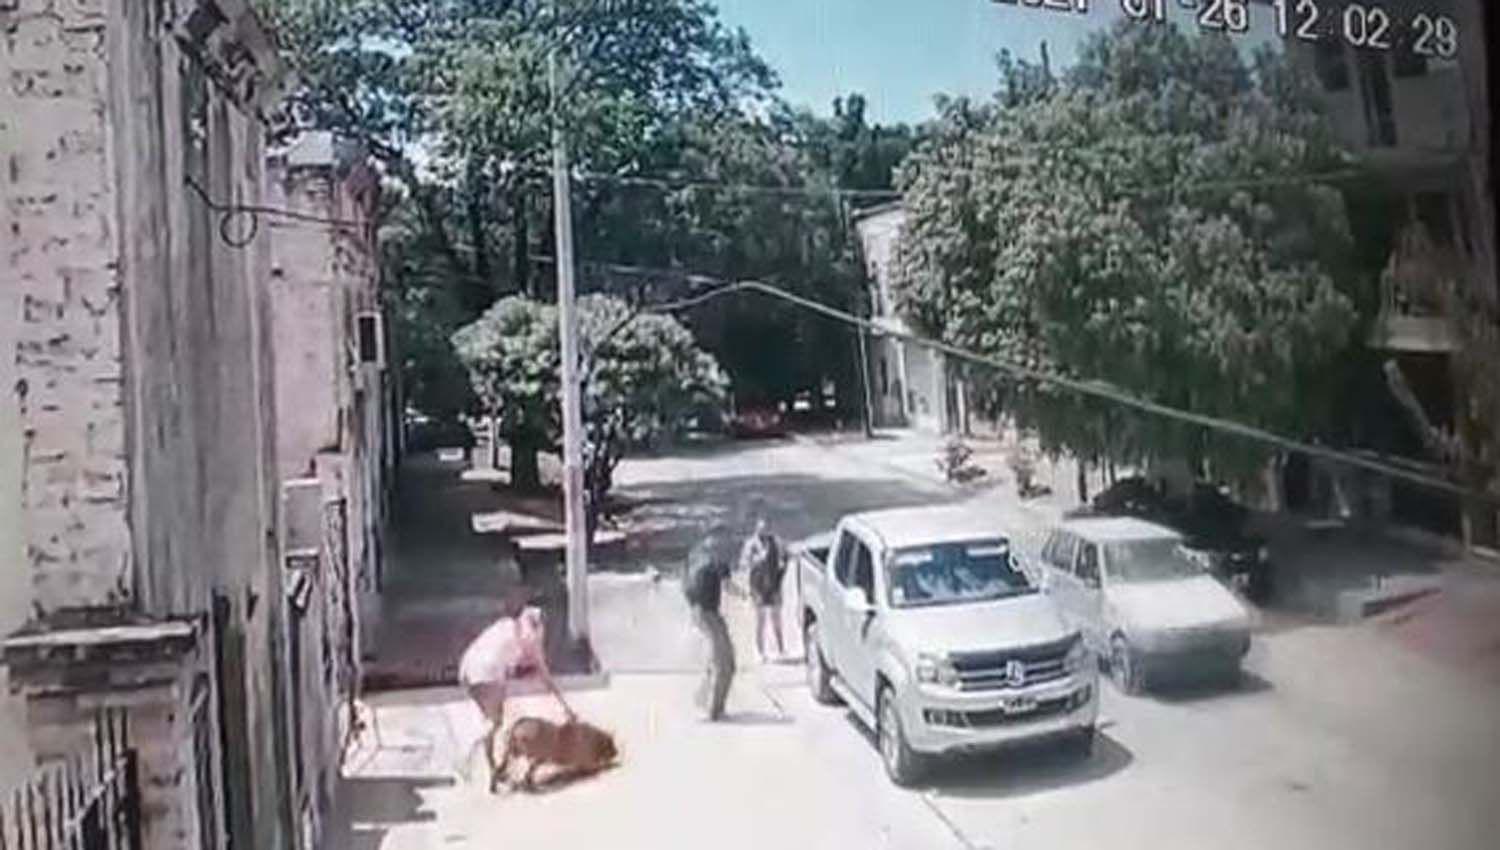 VIDEO  Abogado denuncioacute a proteccionistas que se llevaron su perro valuado en 100000